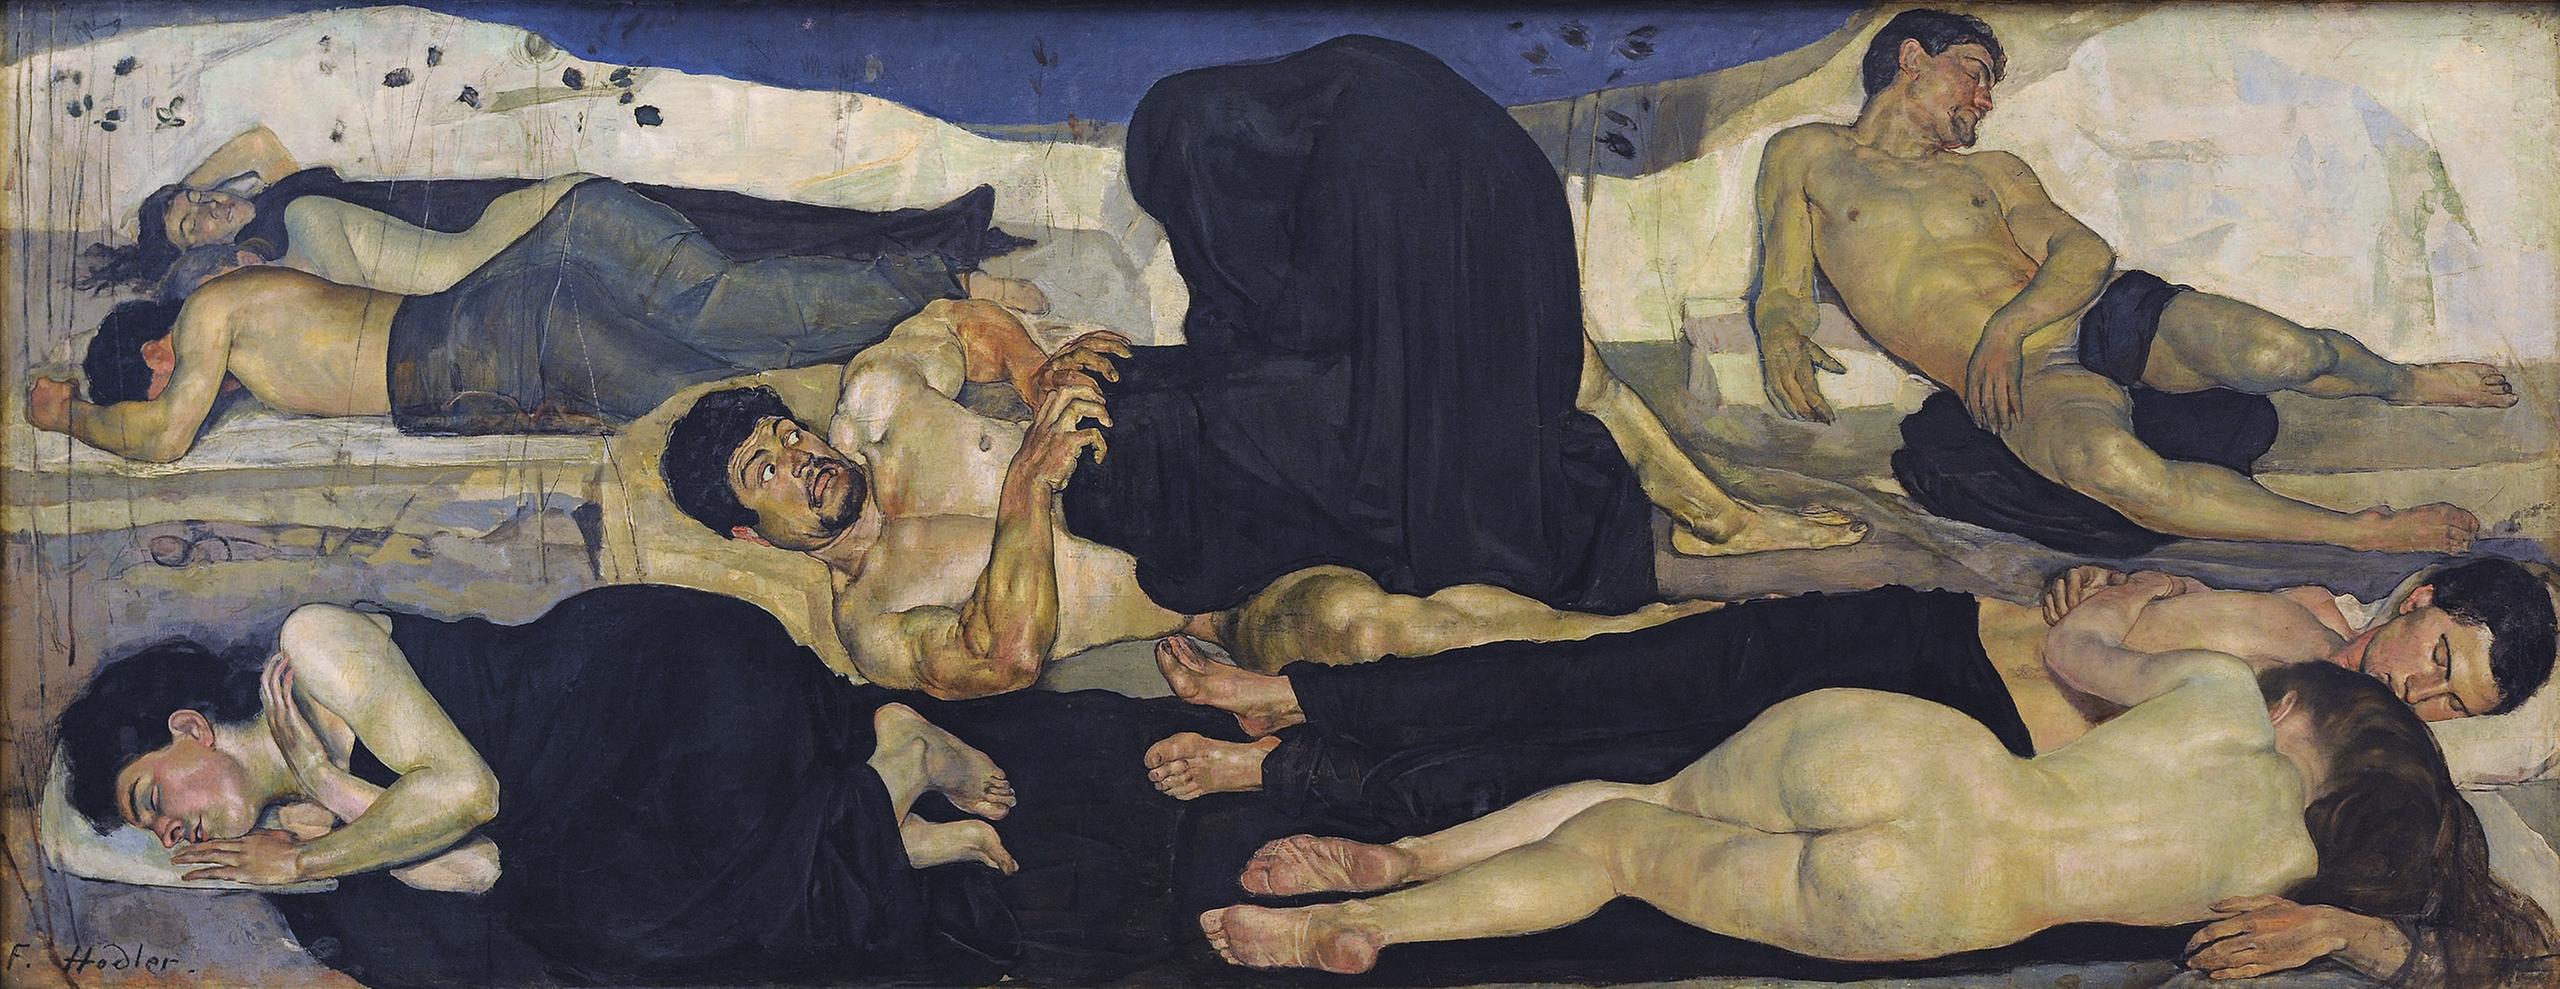 Detalle de La Noche, de Hodler: Varias personas duermen menos una, con ojos de miedo ante una figura cubierta totalmente